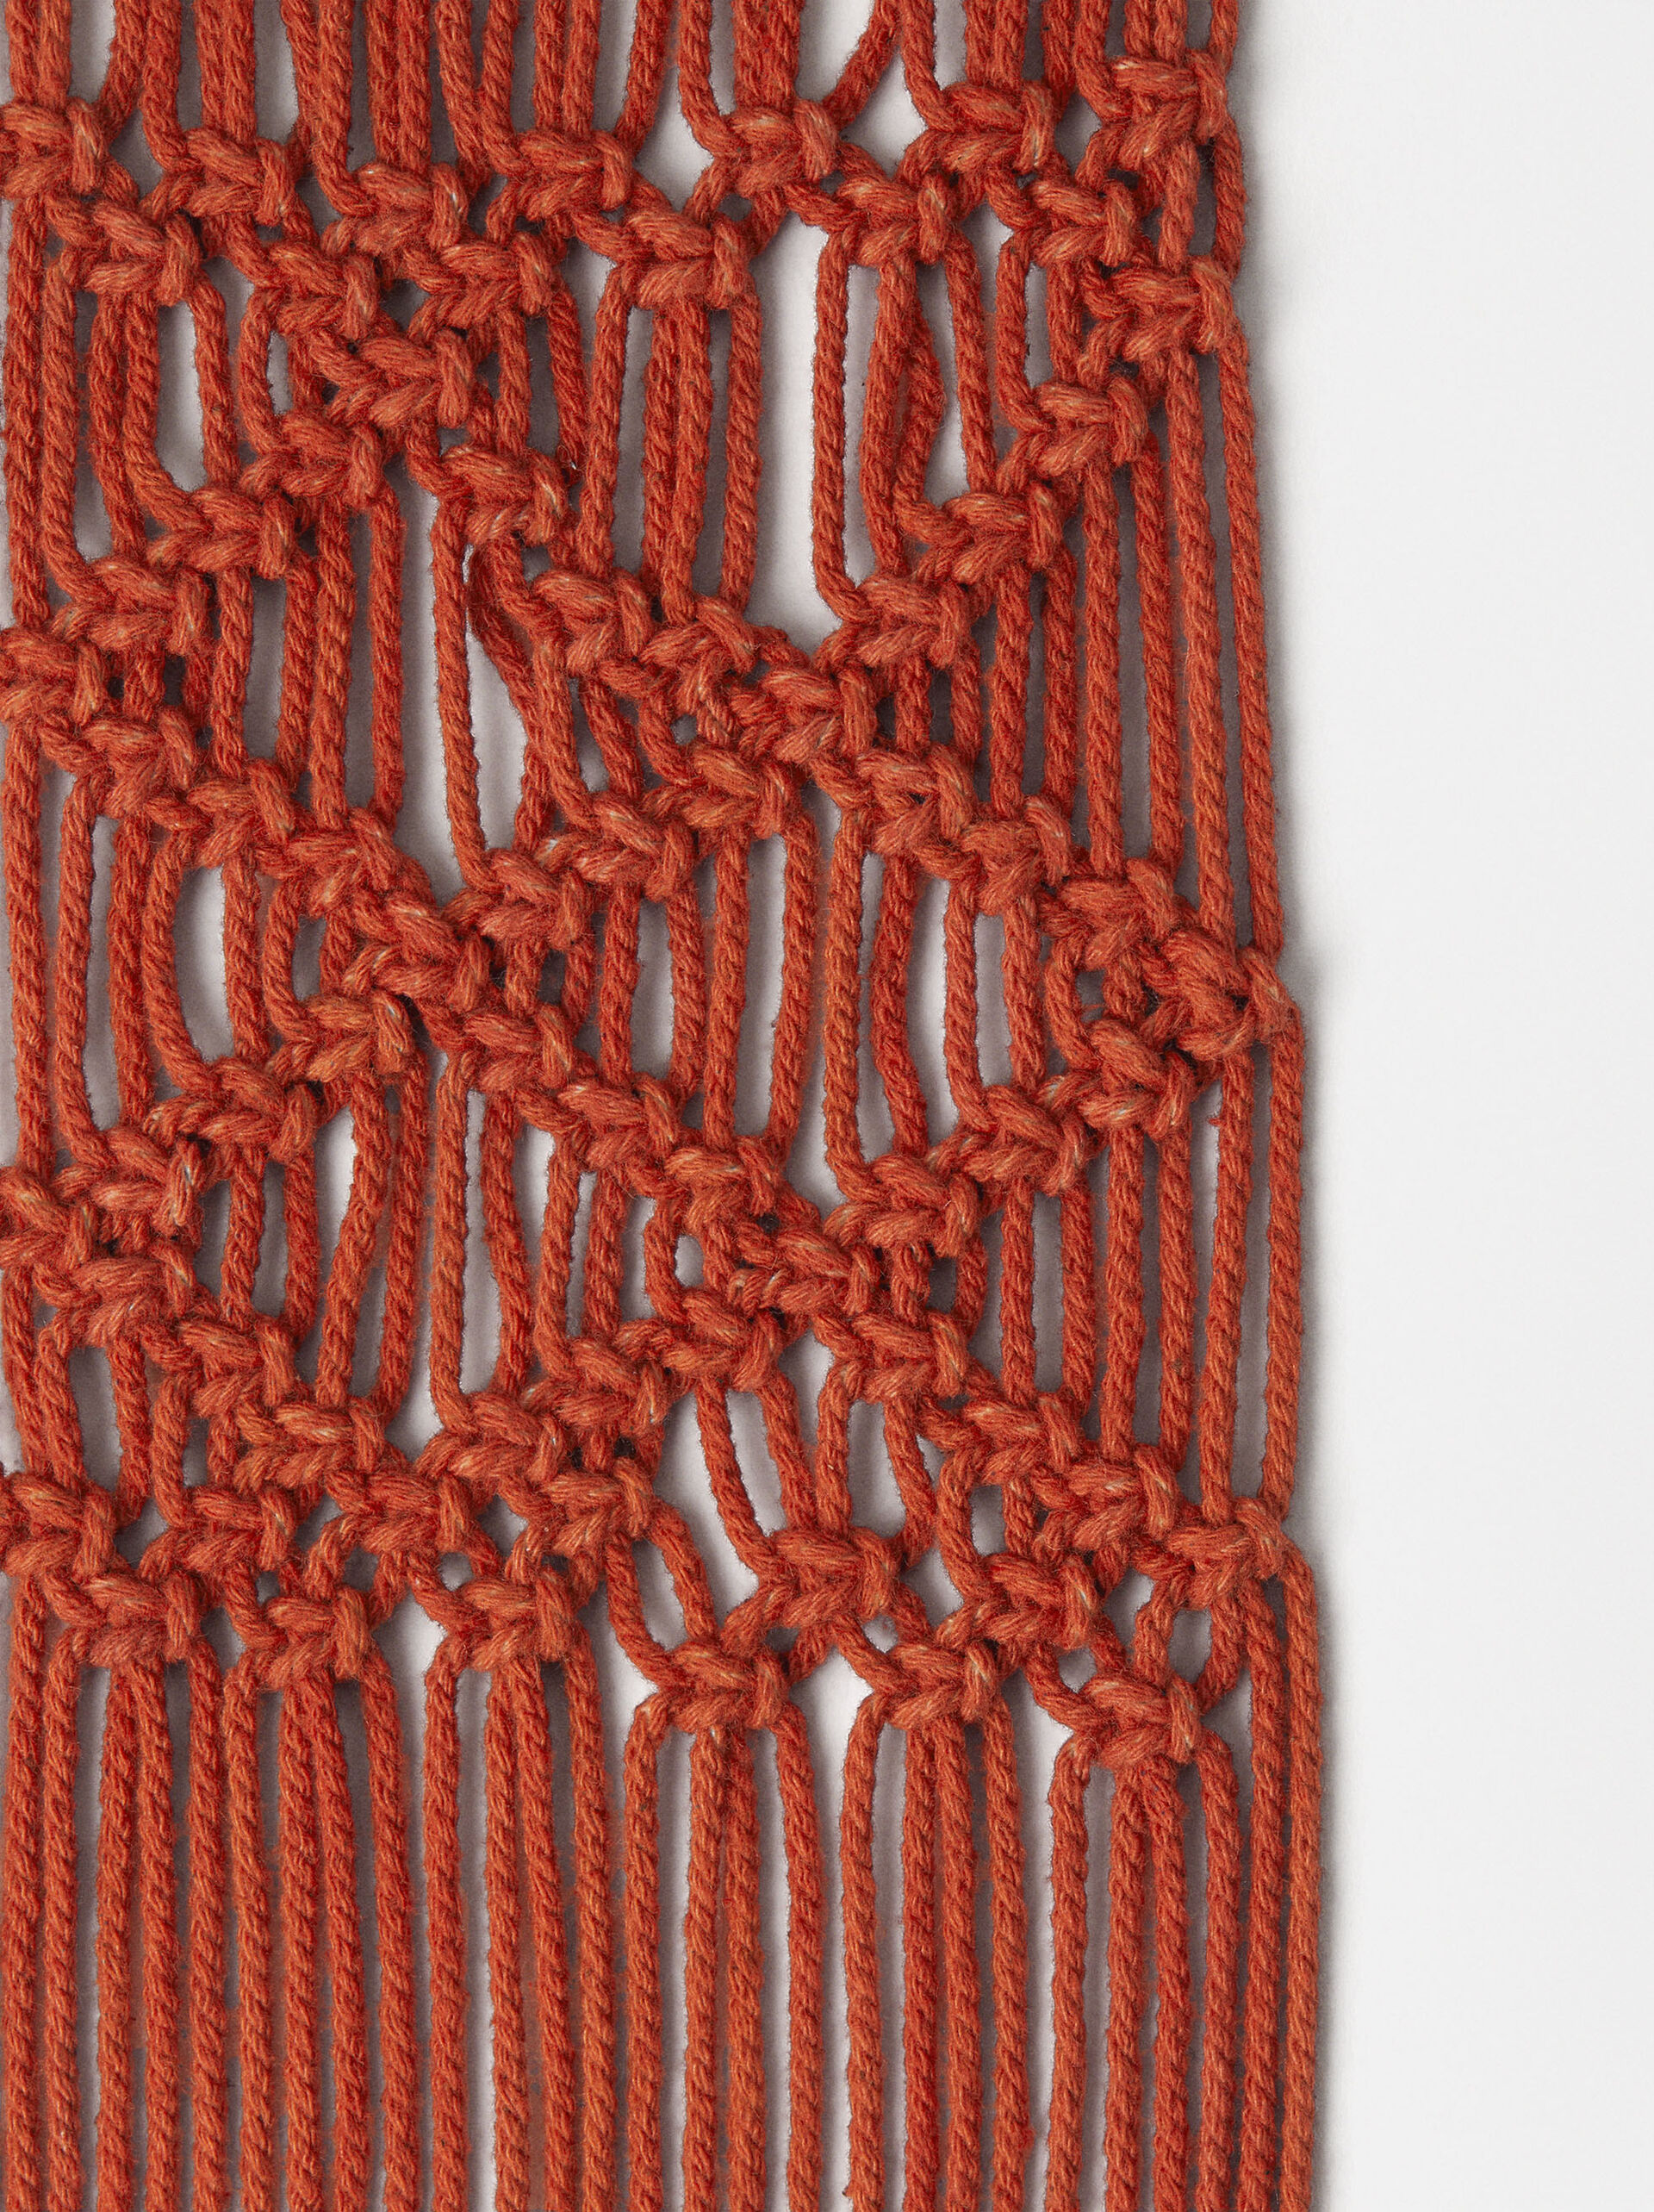 Exclusivo Online - Pulsera De Madera Crochet image number 2.0